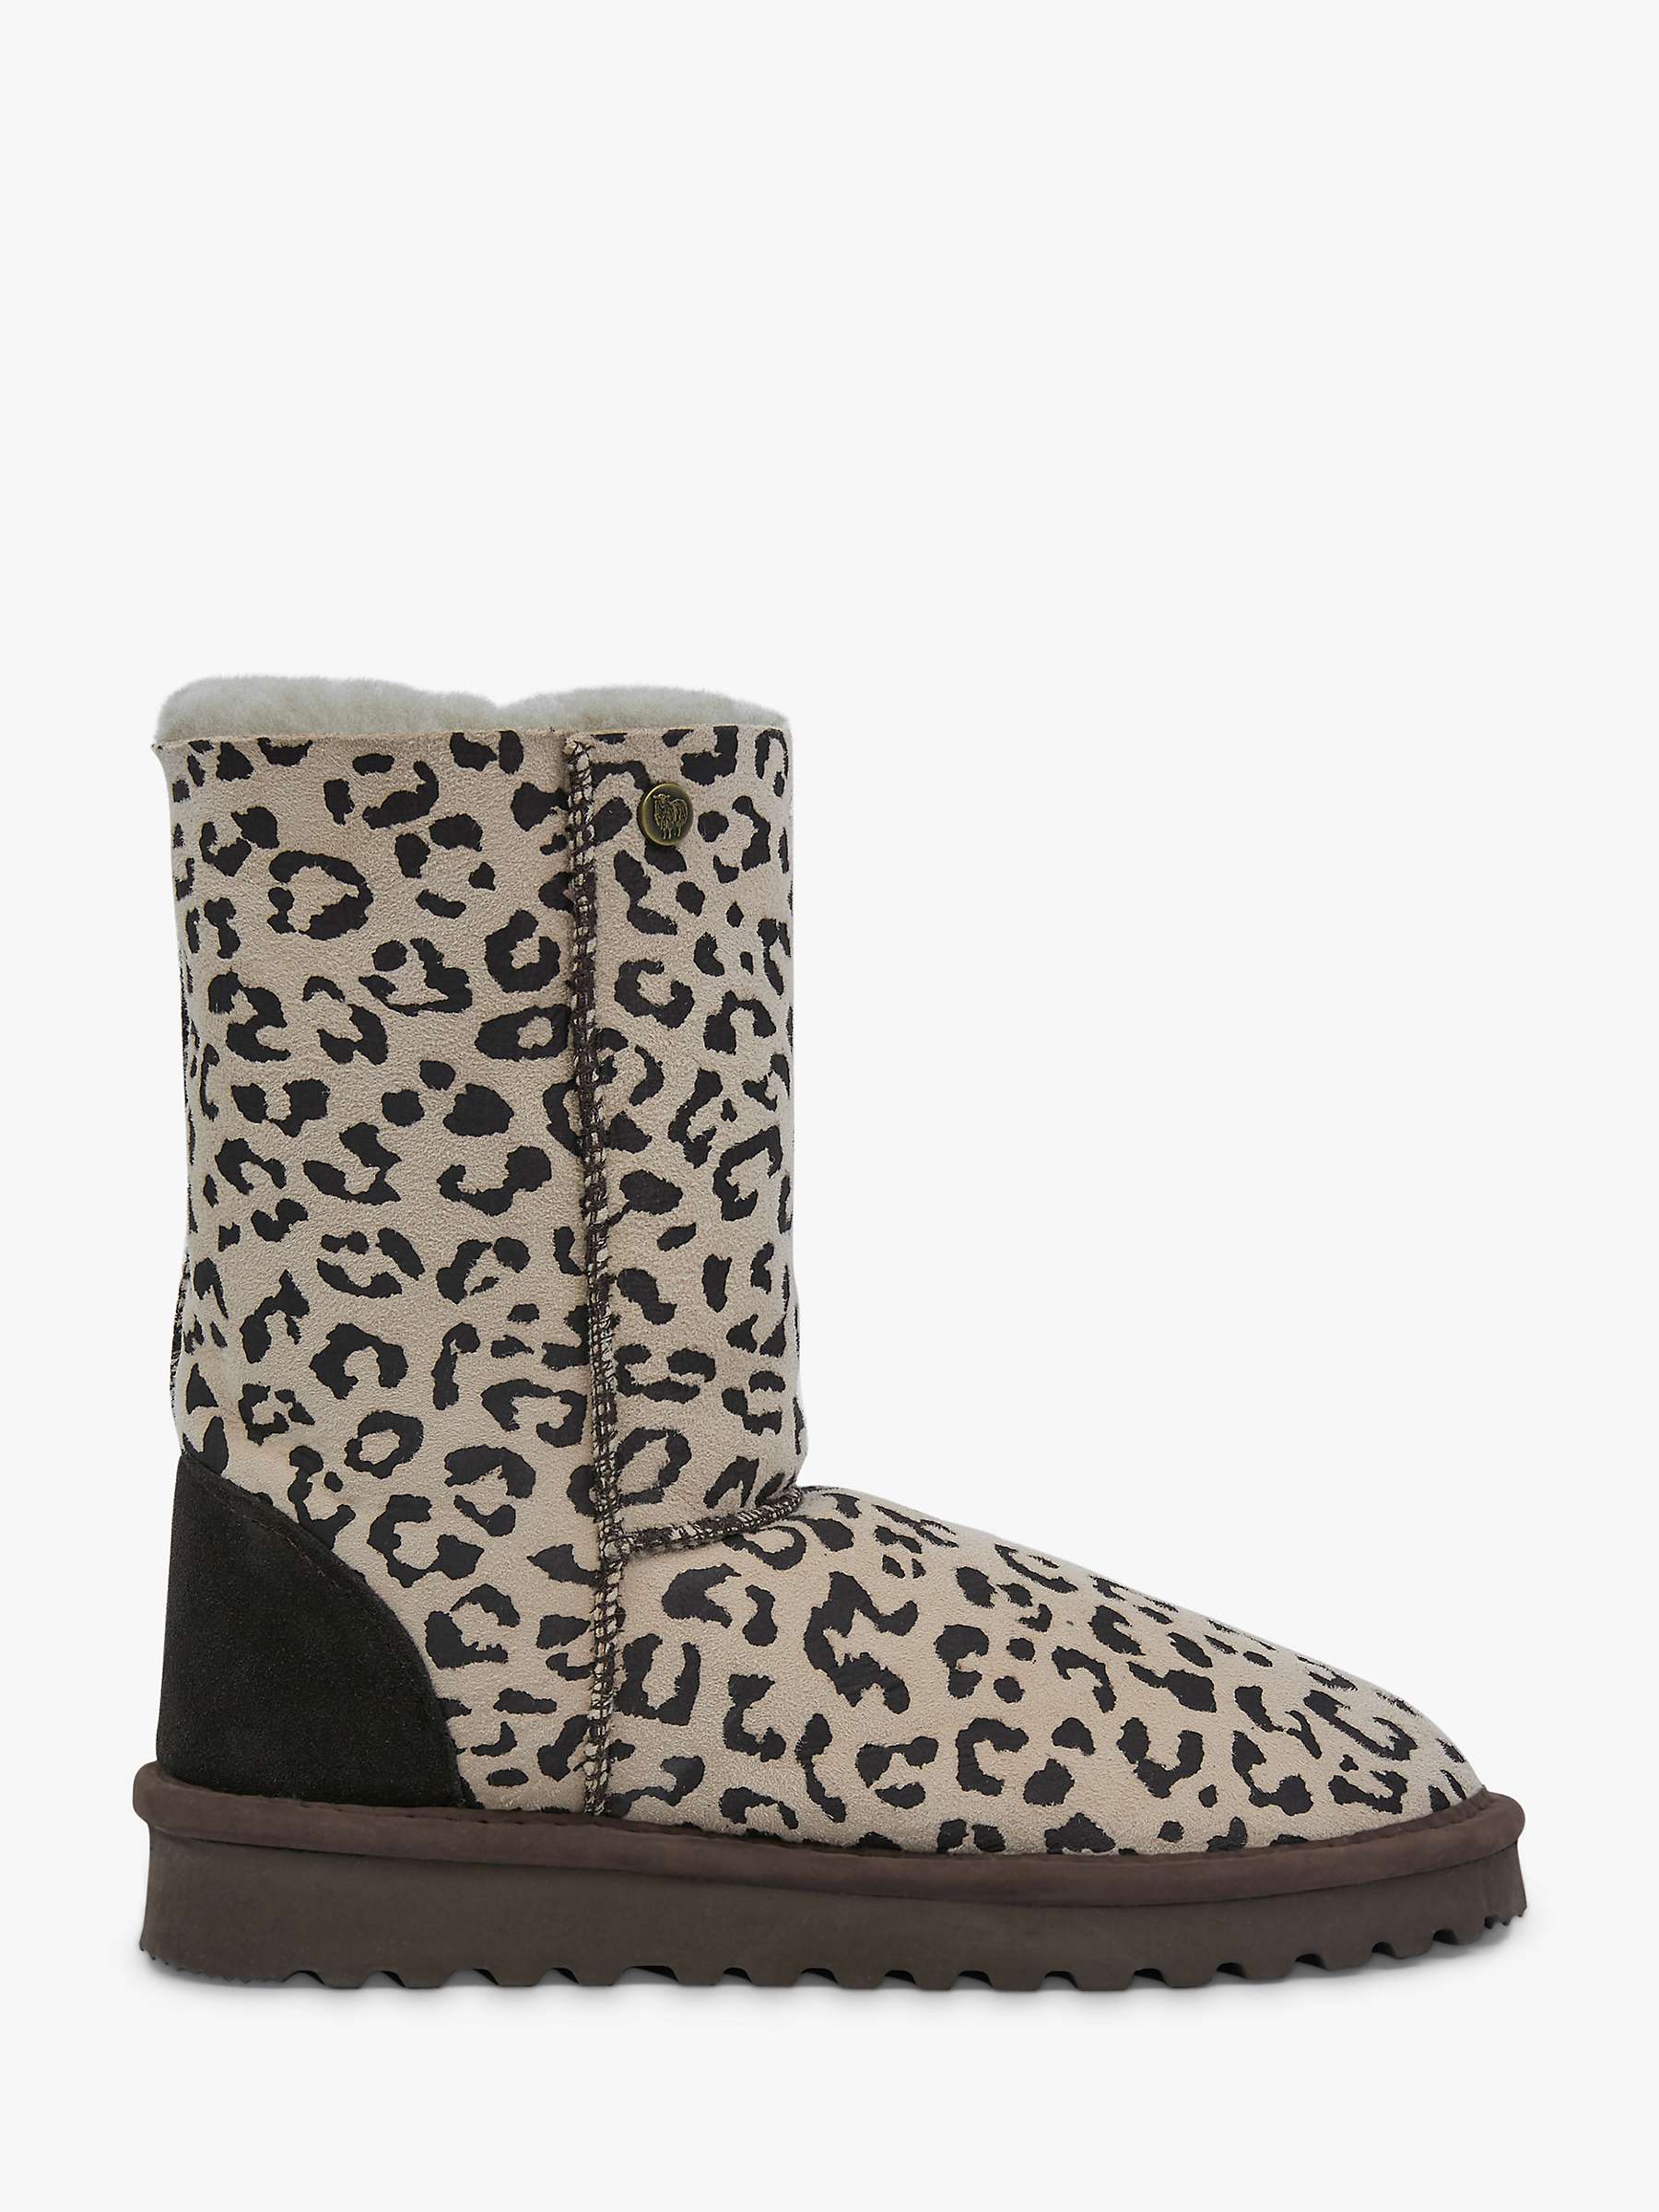 Buy Celtic & Co. Original Celt Leopard Print Sheepskin Boots, Multi Online at johnlewis.com